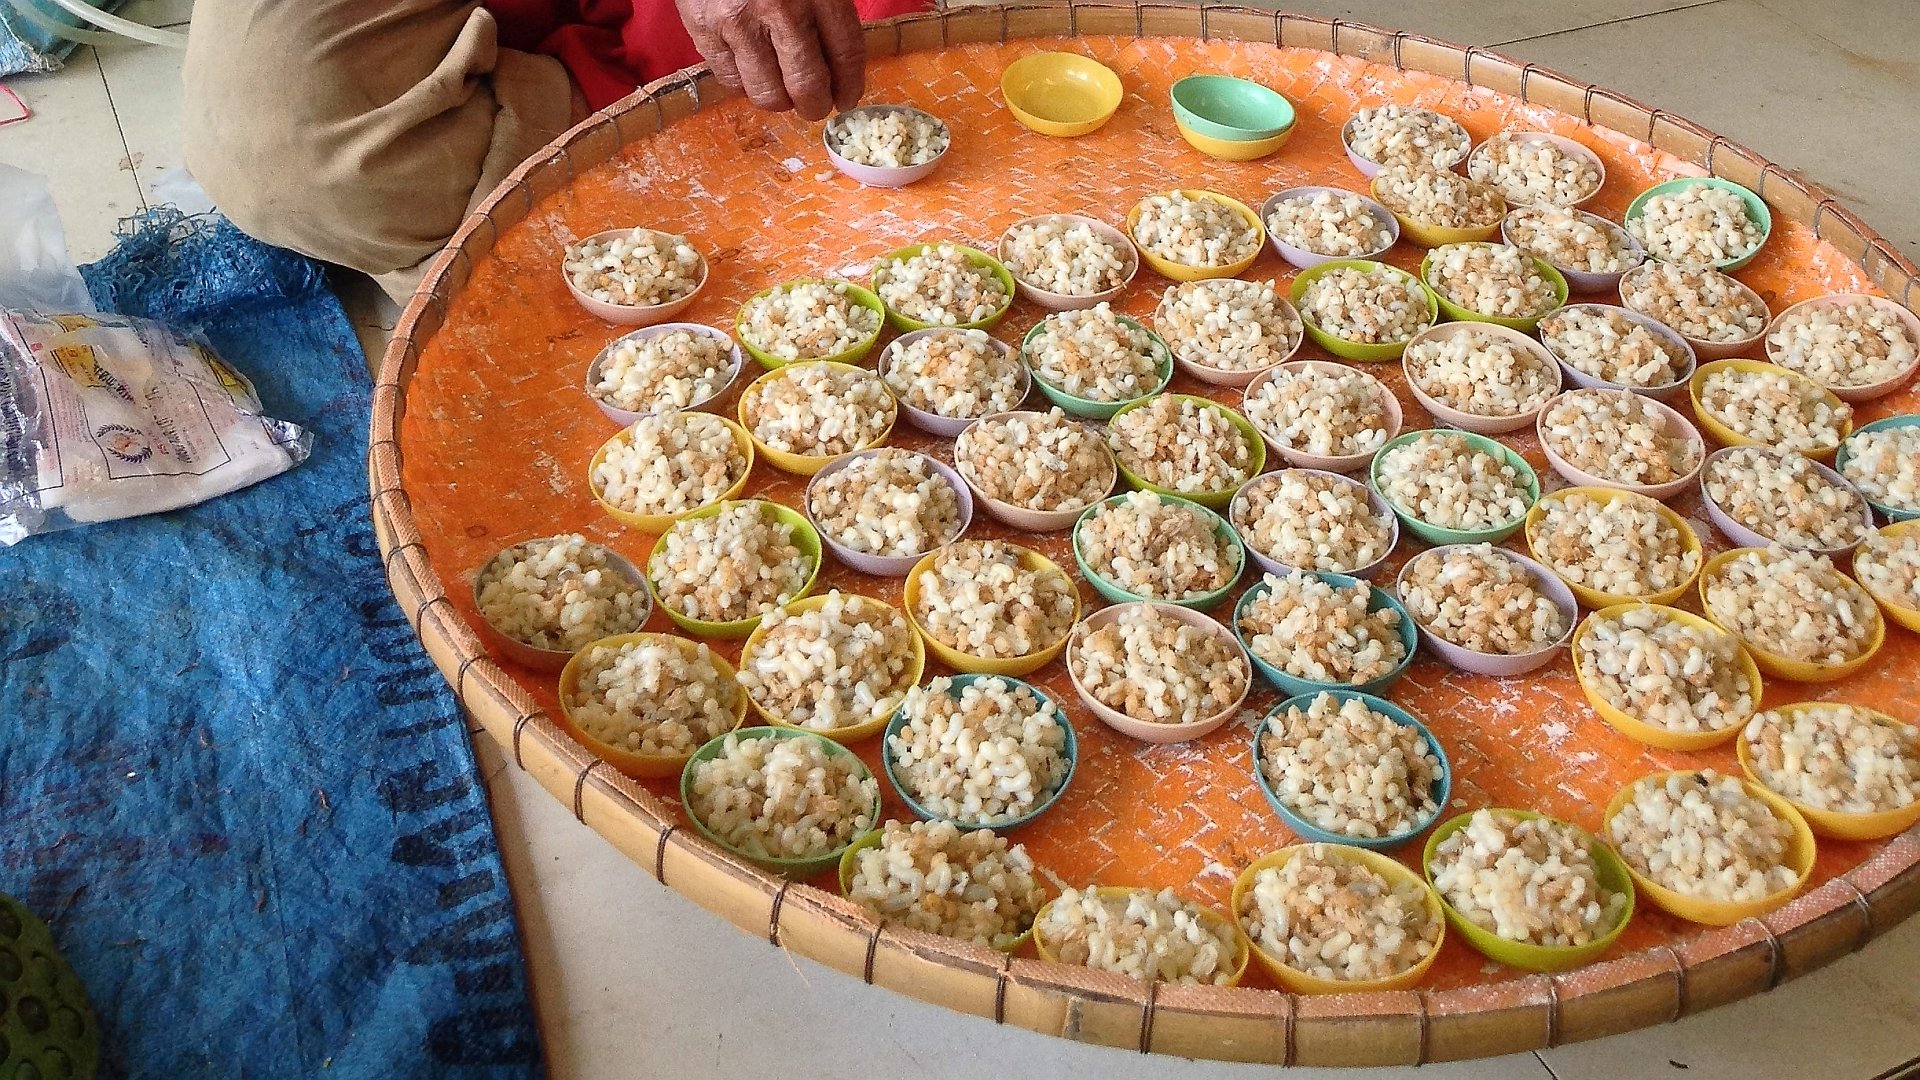 Ameiseneier sind im Norden Thailands ein beliebtes Säuerungsmittel für Salate.